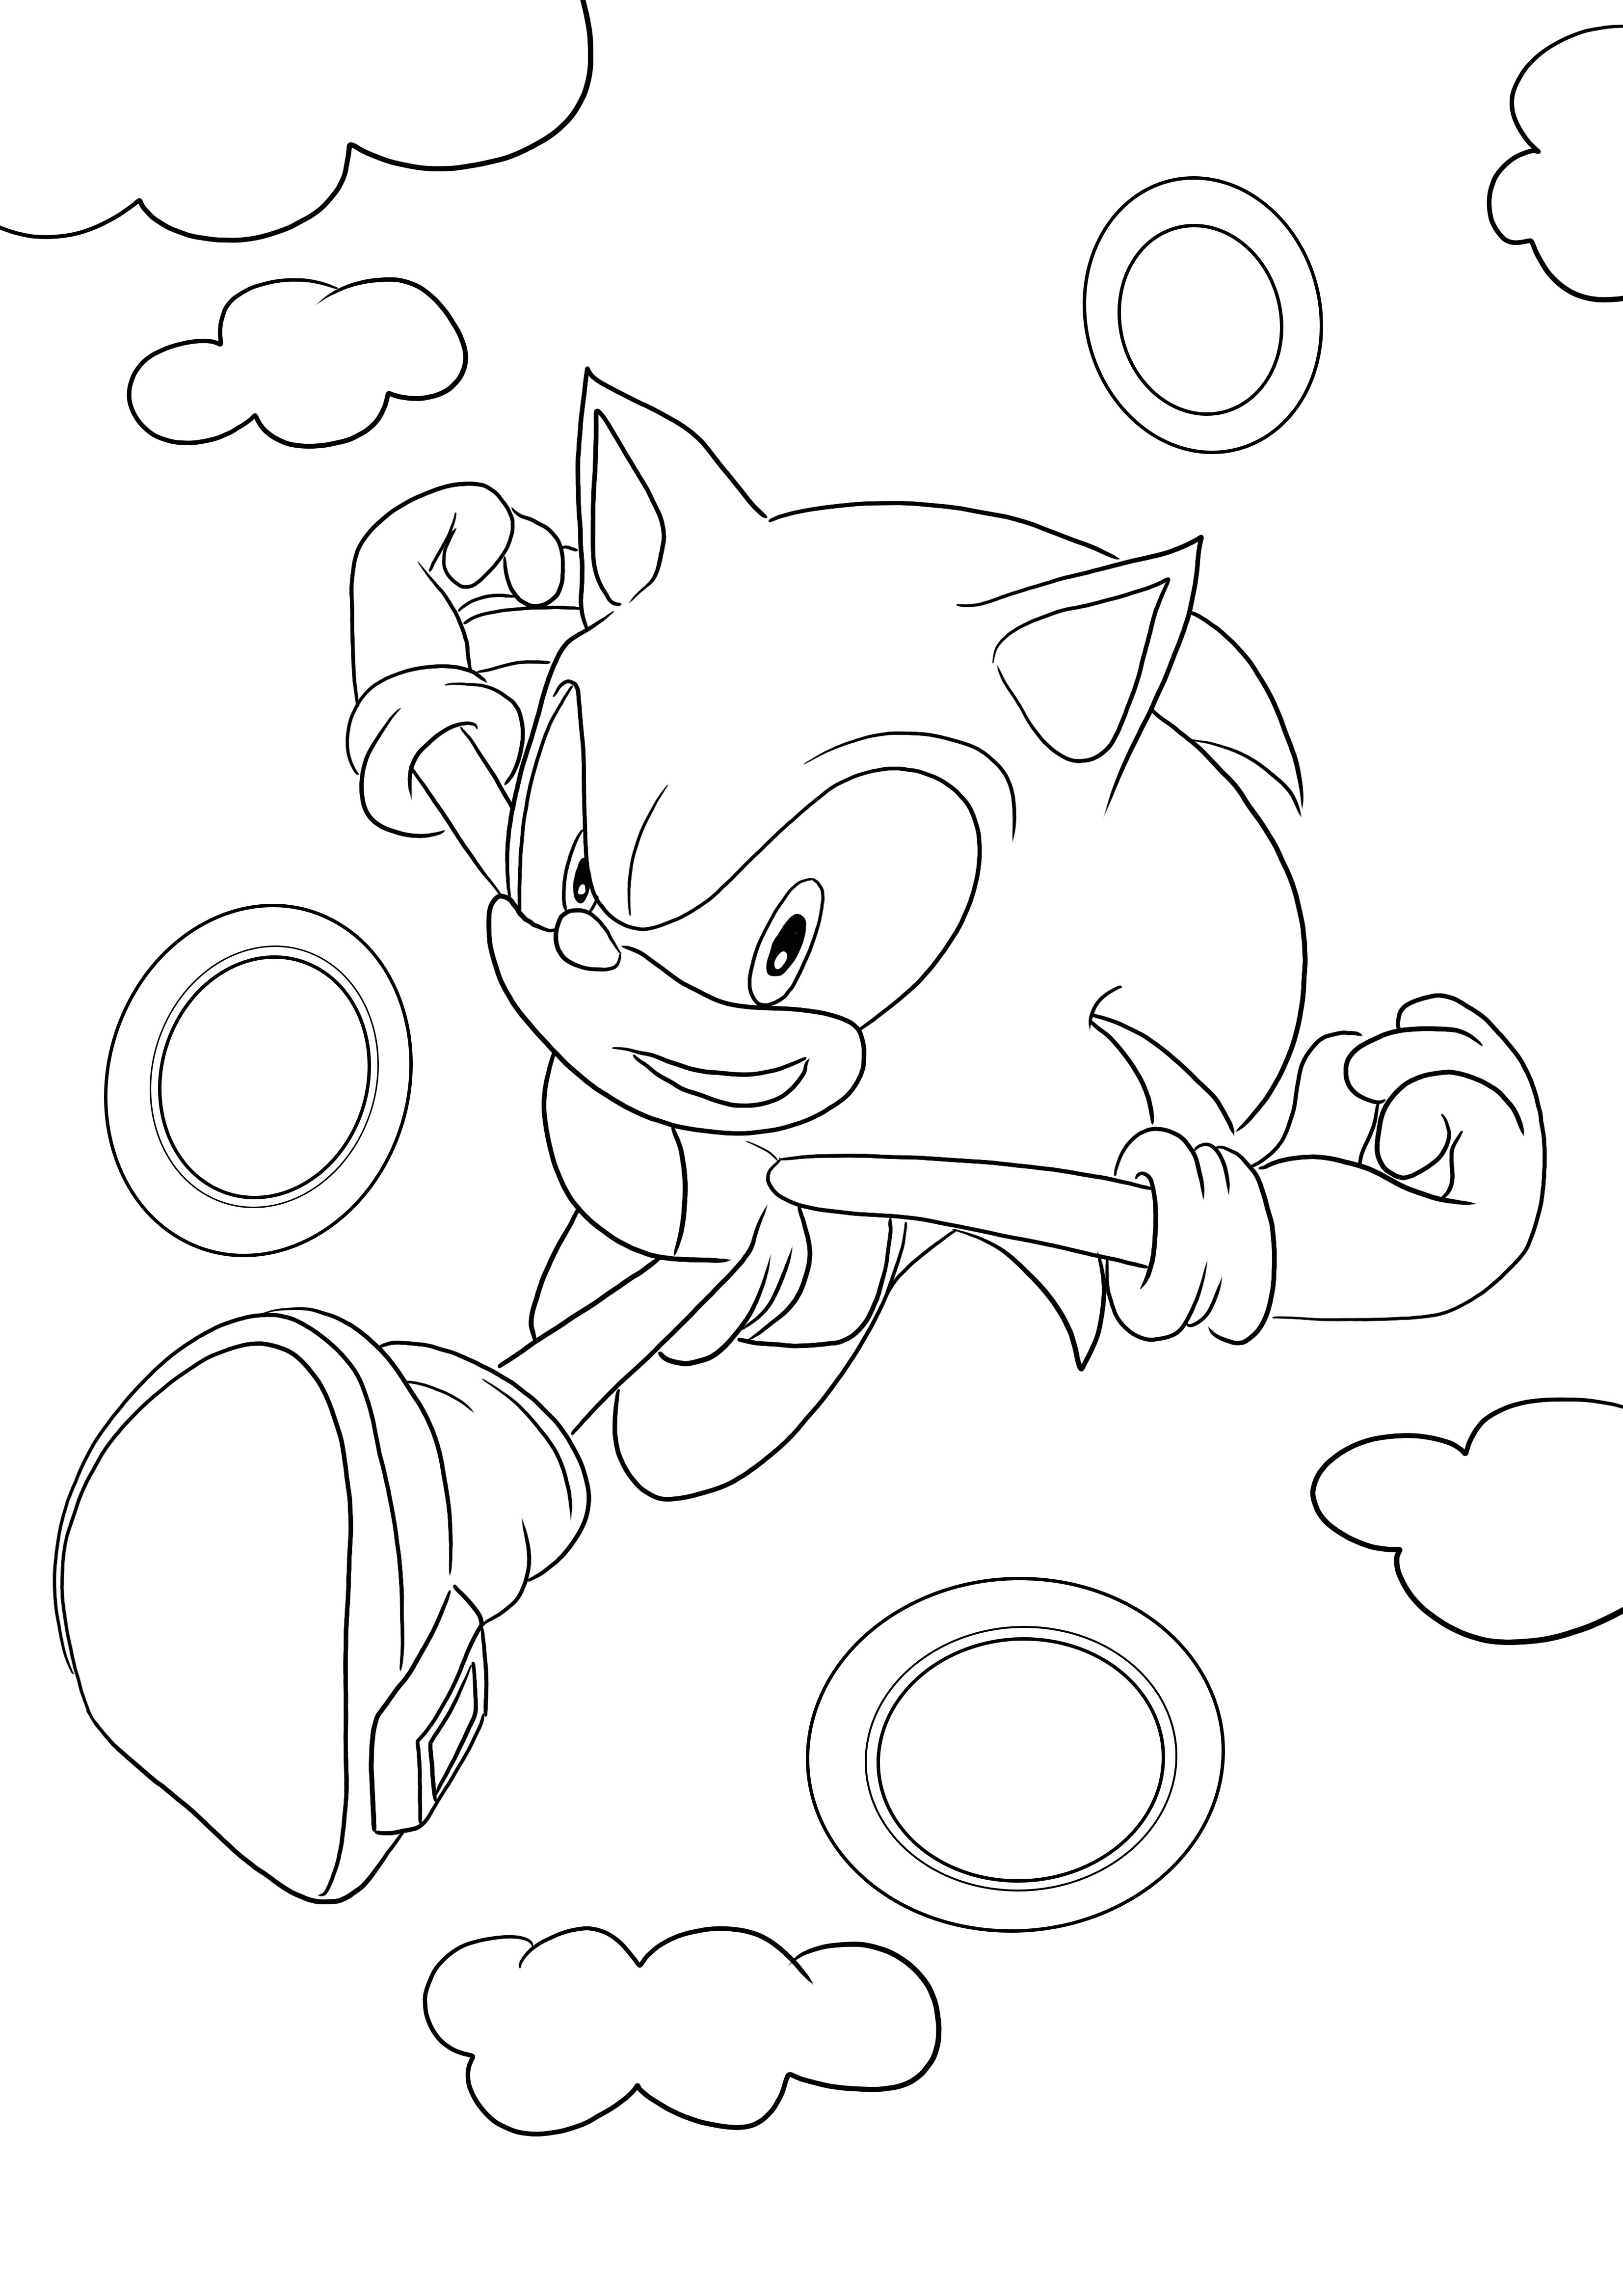 Download gratuito e colorazione di Sonic che attraversa gli anelli